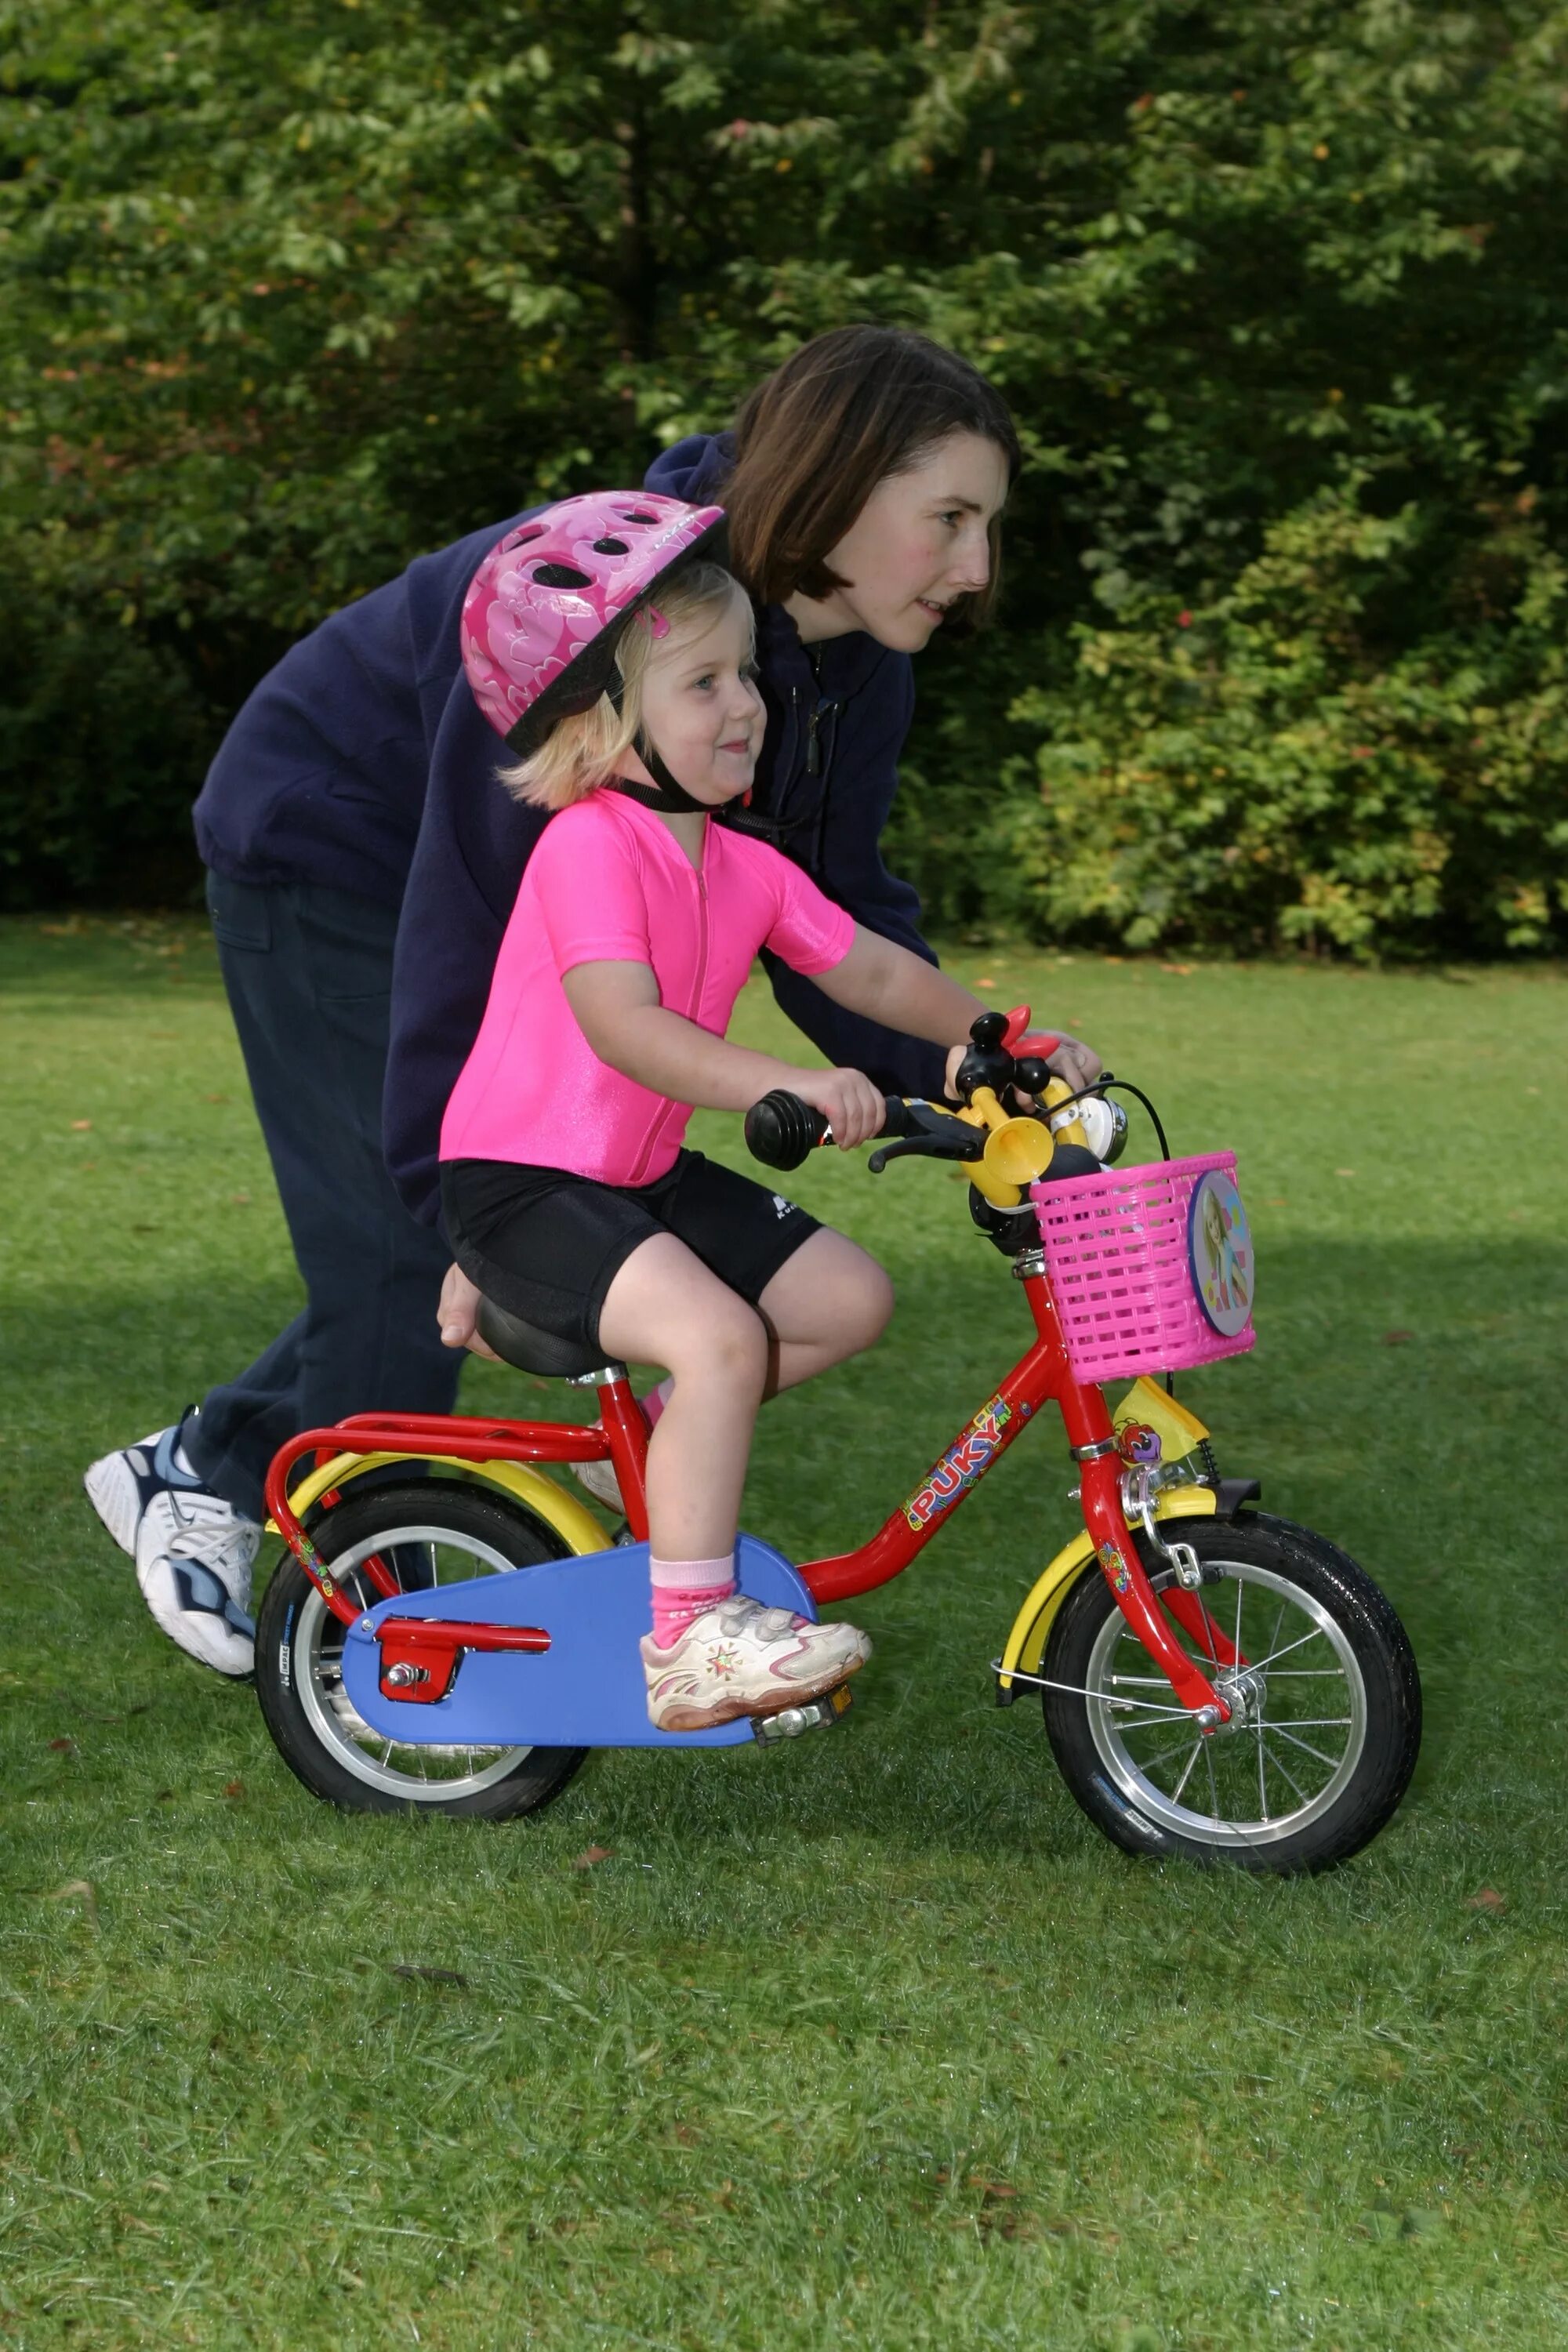 The children are riding bikes. Велосипед riding. Двухколесный велосипед для малышей. Детский велосипед Ride. Best Ride велосипед детский.